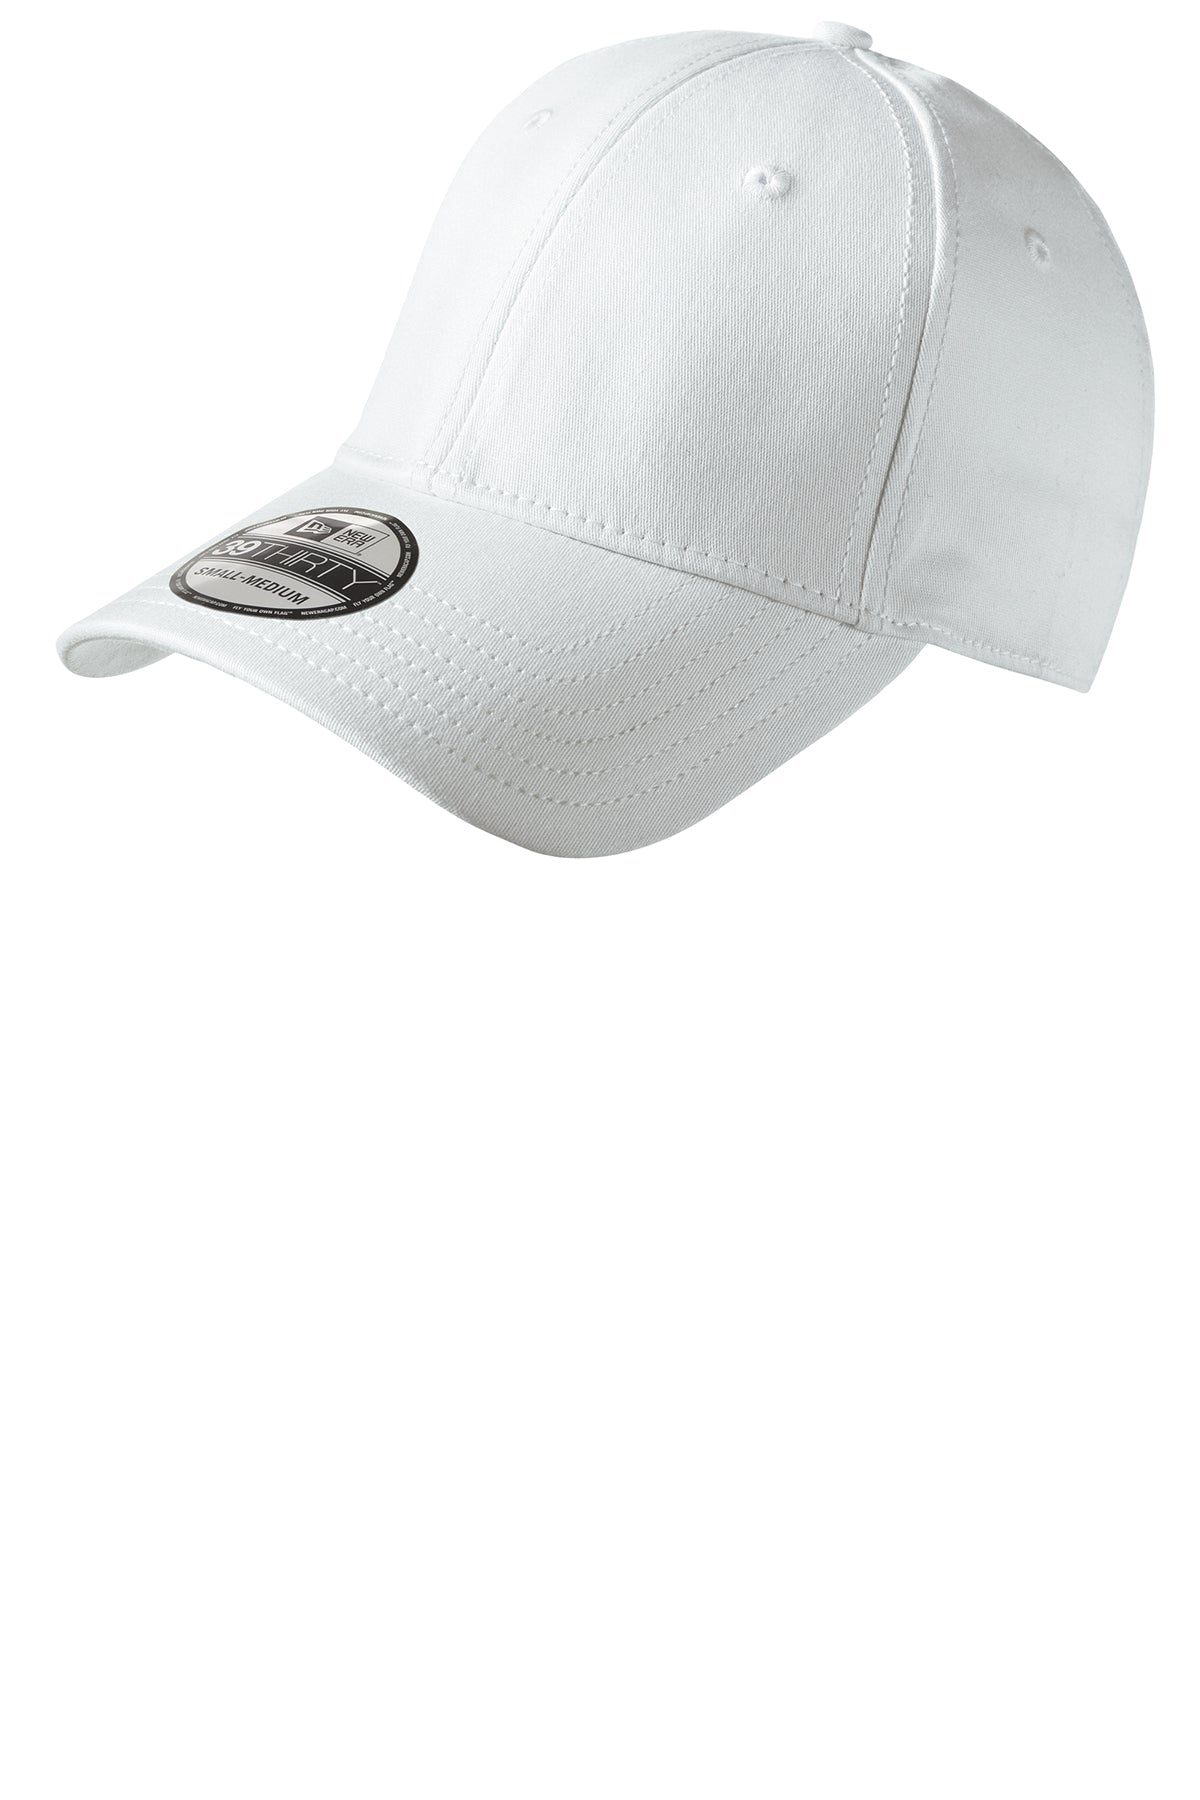 New Era® - Structured Stretch Cotton Cap - NE1000